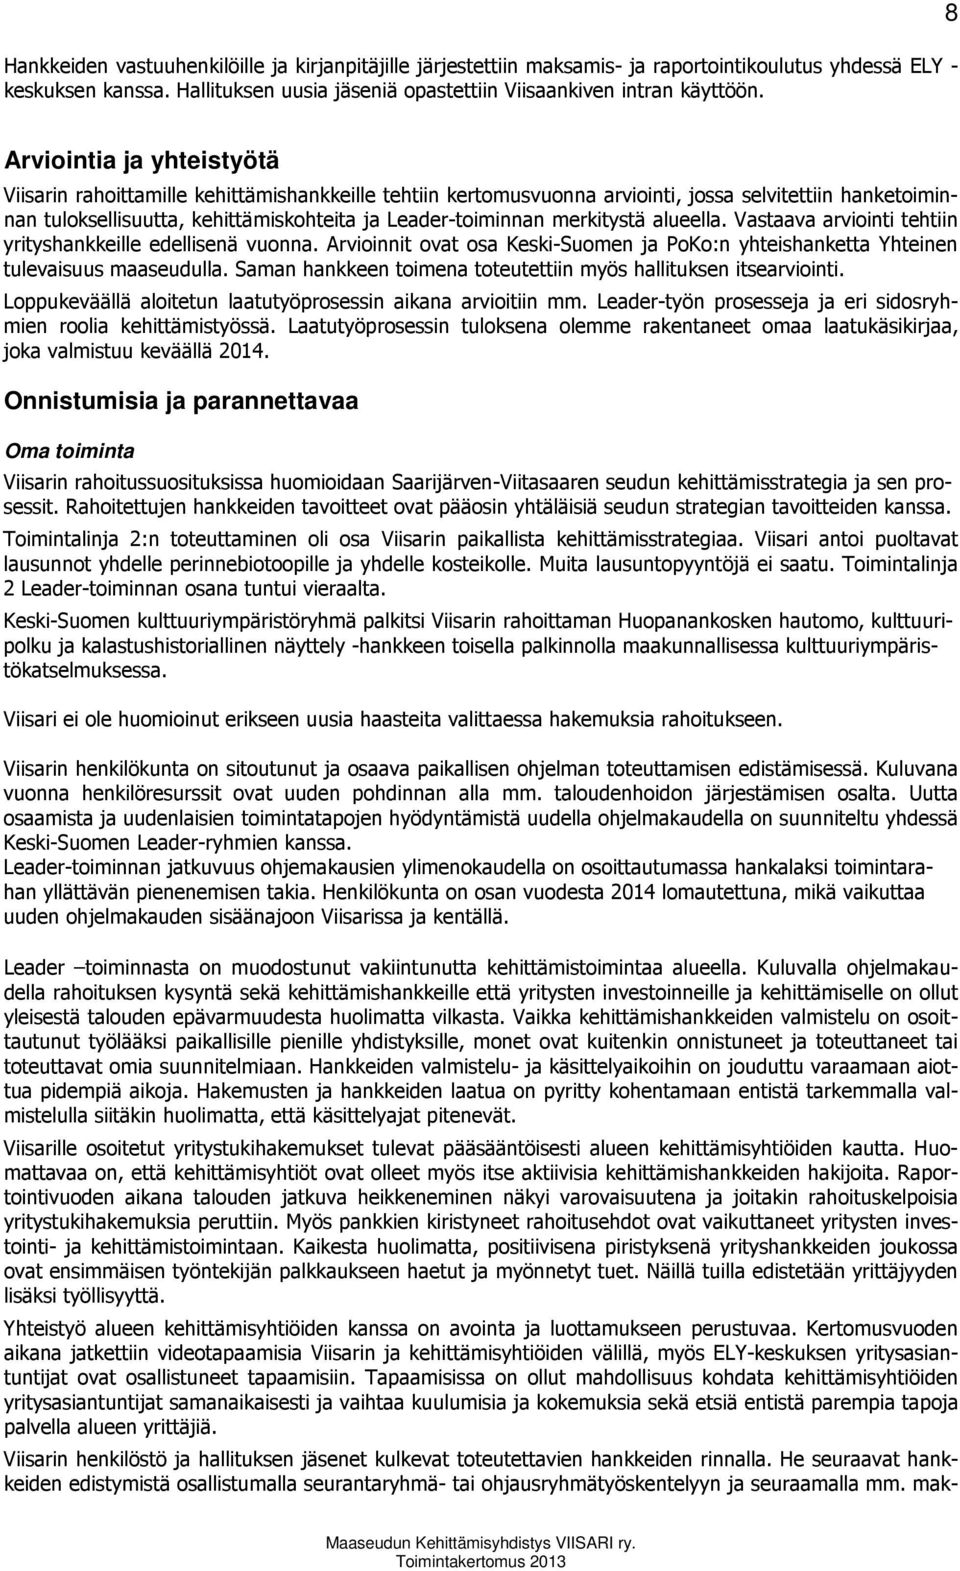 merkitystä alueella. Vastaava arviointi tehtiin yrityshankkeille edellisenä vuonna. Arvioinnit ovat osa Keski-Suomen ja PoKo:n yhteishanketta Yhteinen tulevaisuus maaseudulla.